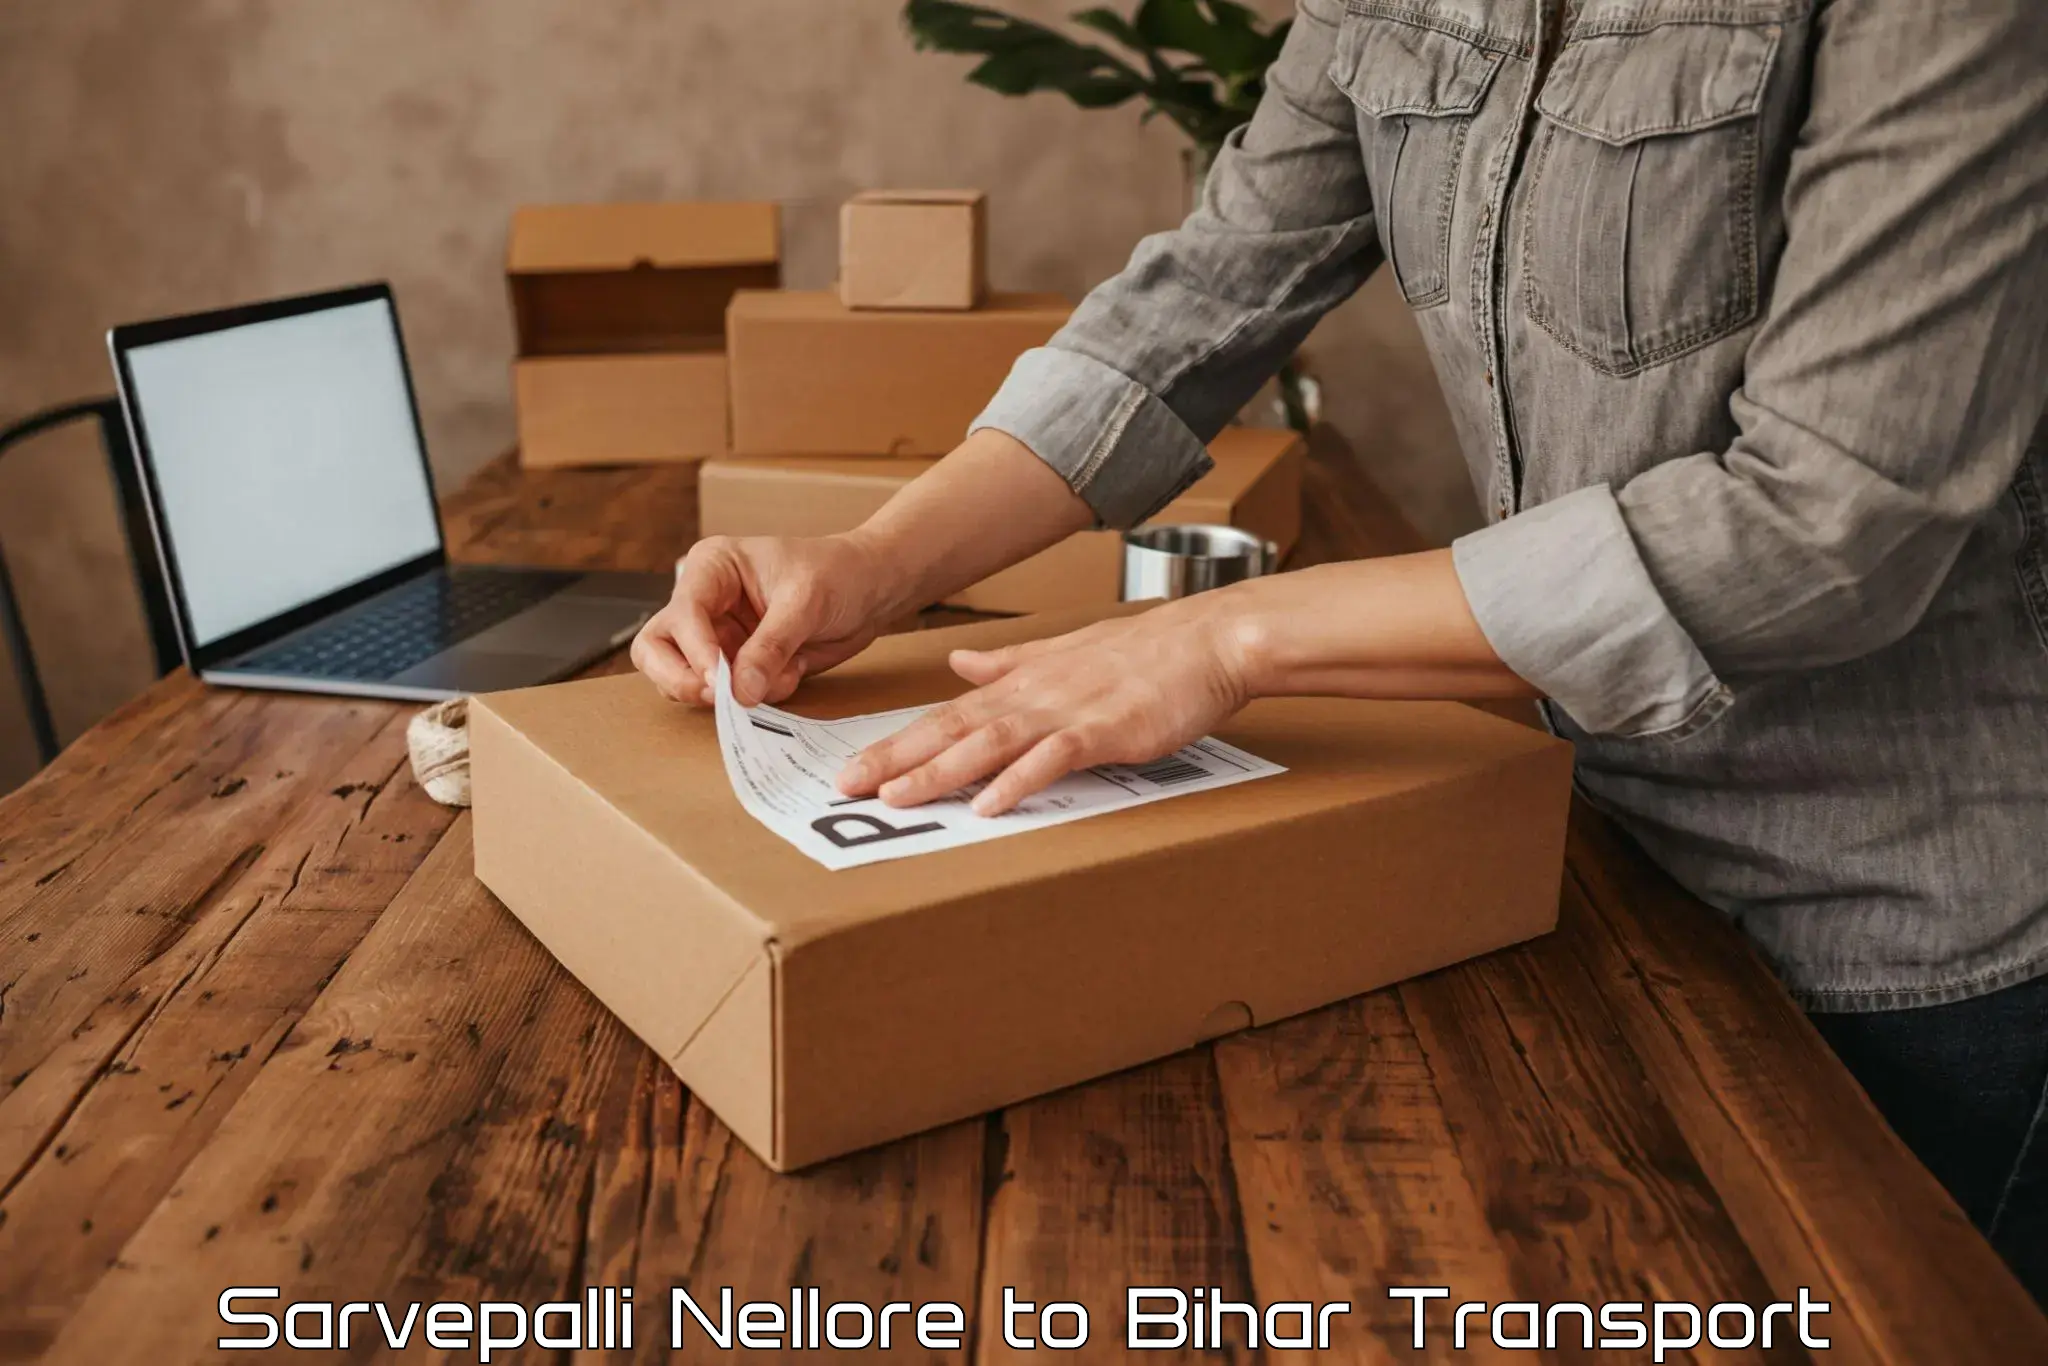 Online transport service Sarvepalli Nellore to Bharwara